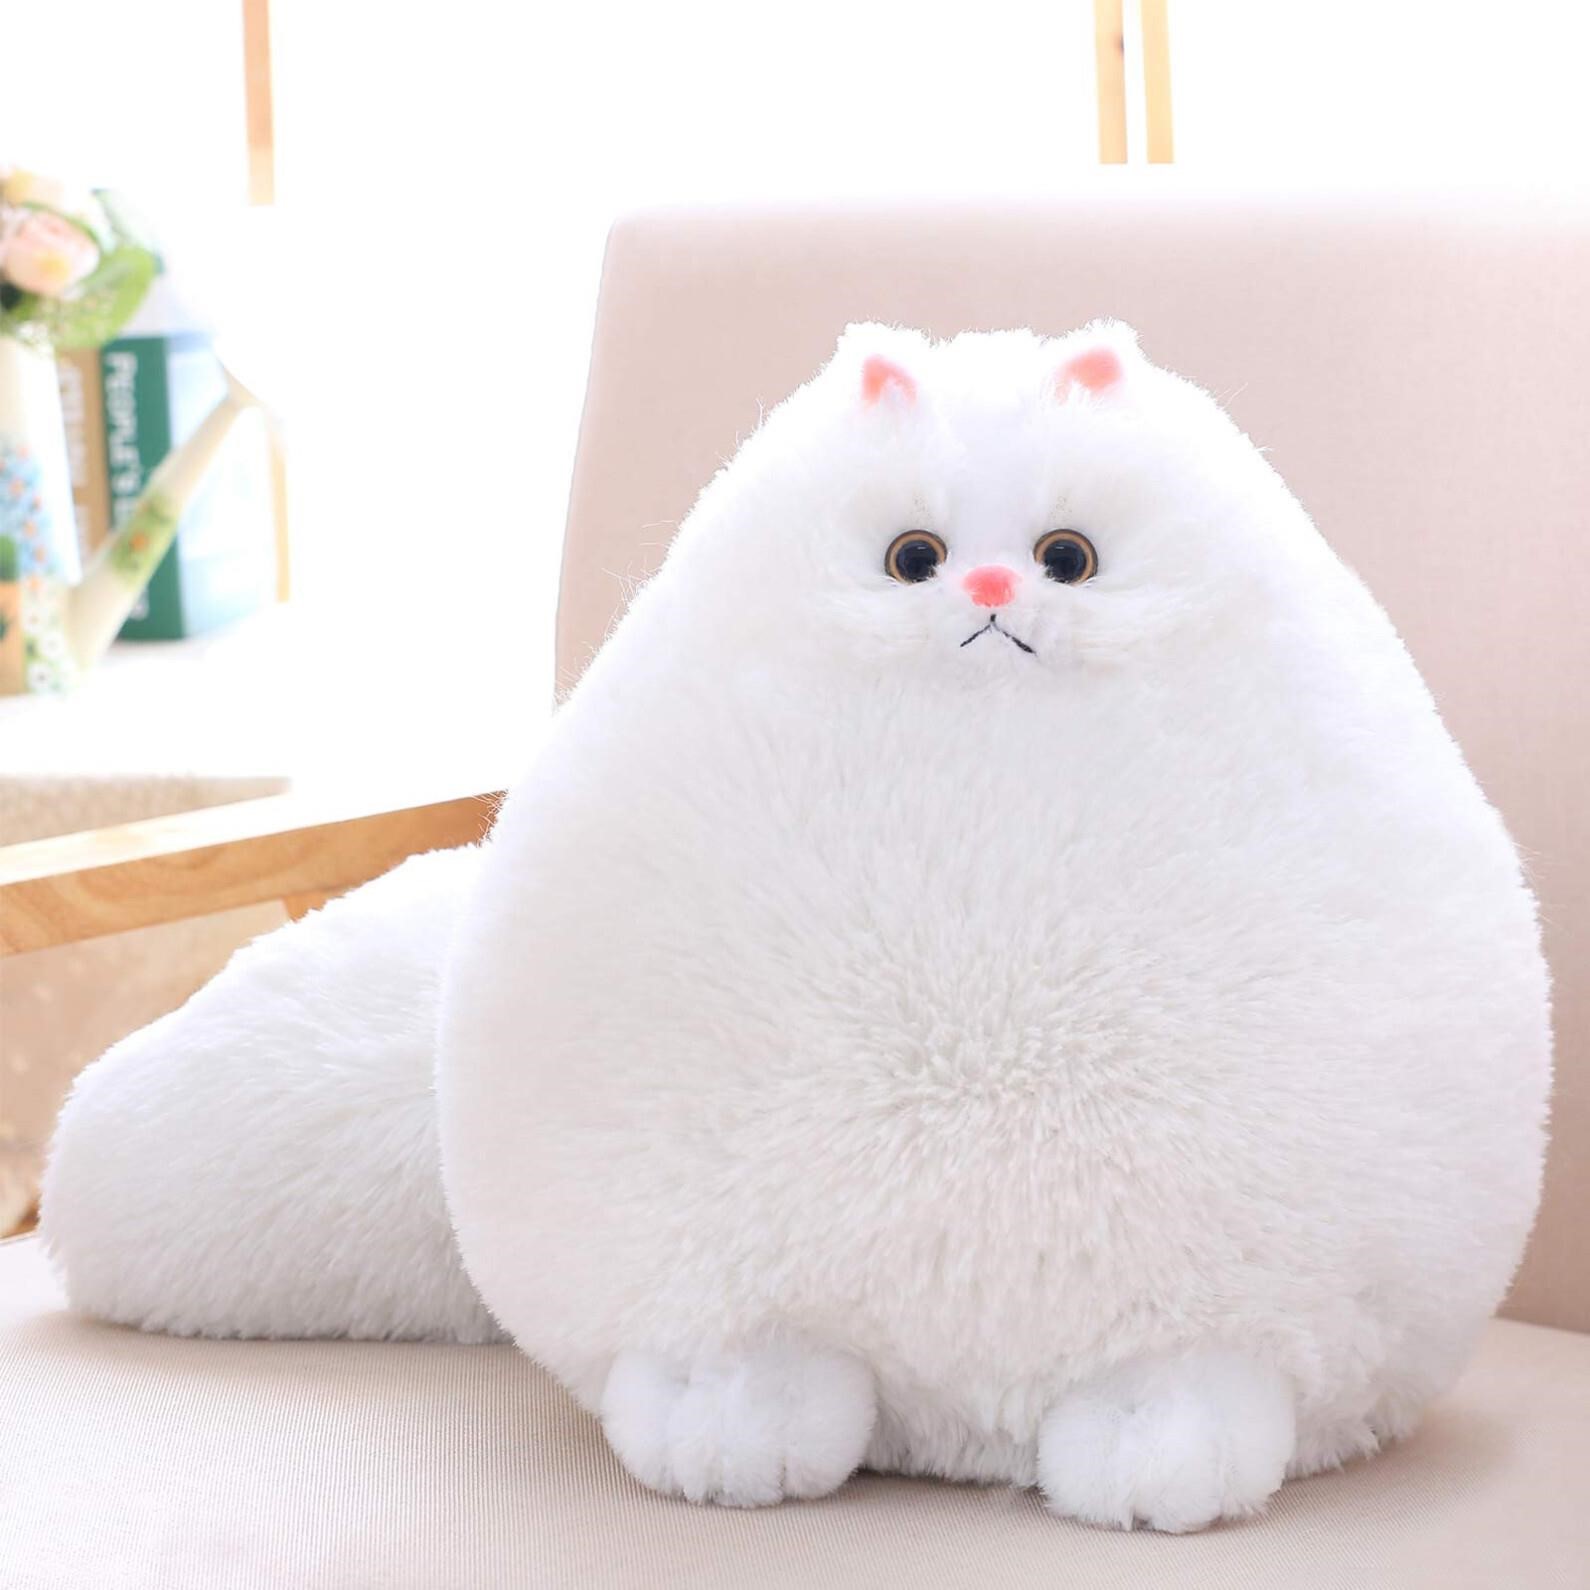 Winsterch Stuffed Animal Plushie Cat Stuffed Anima